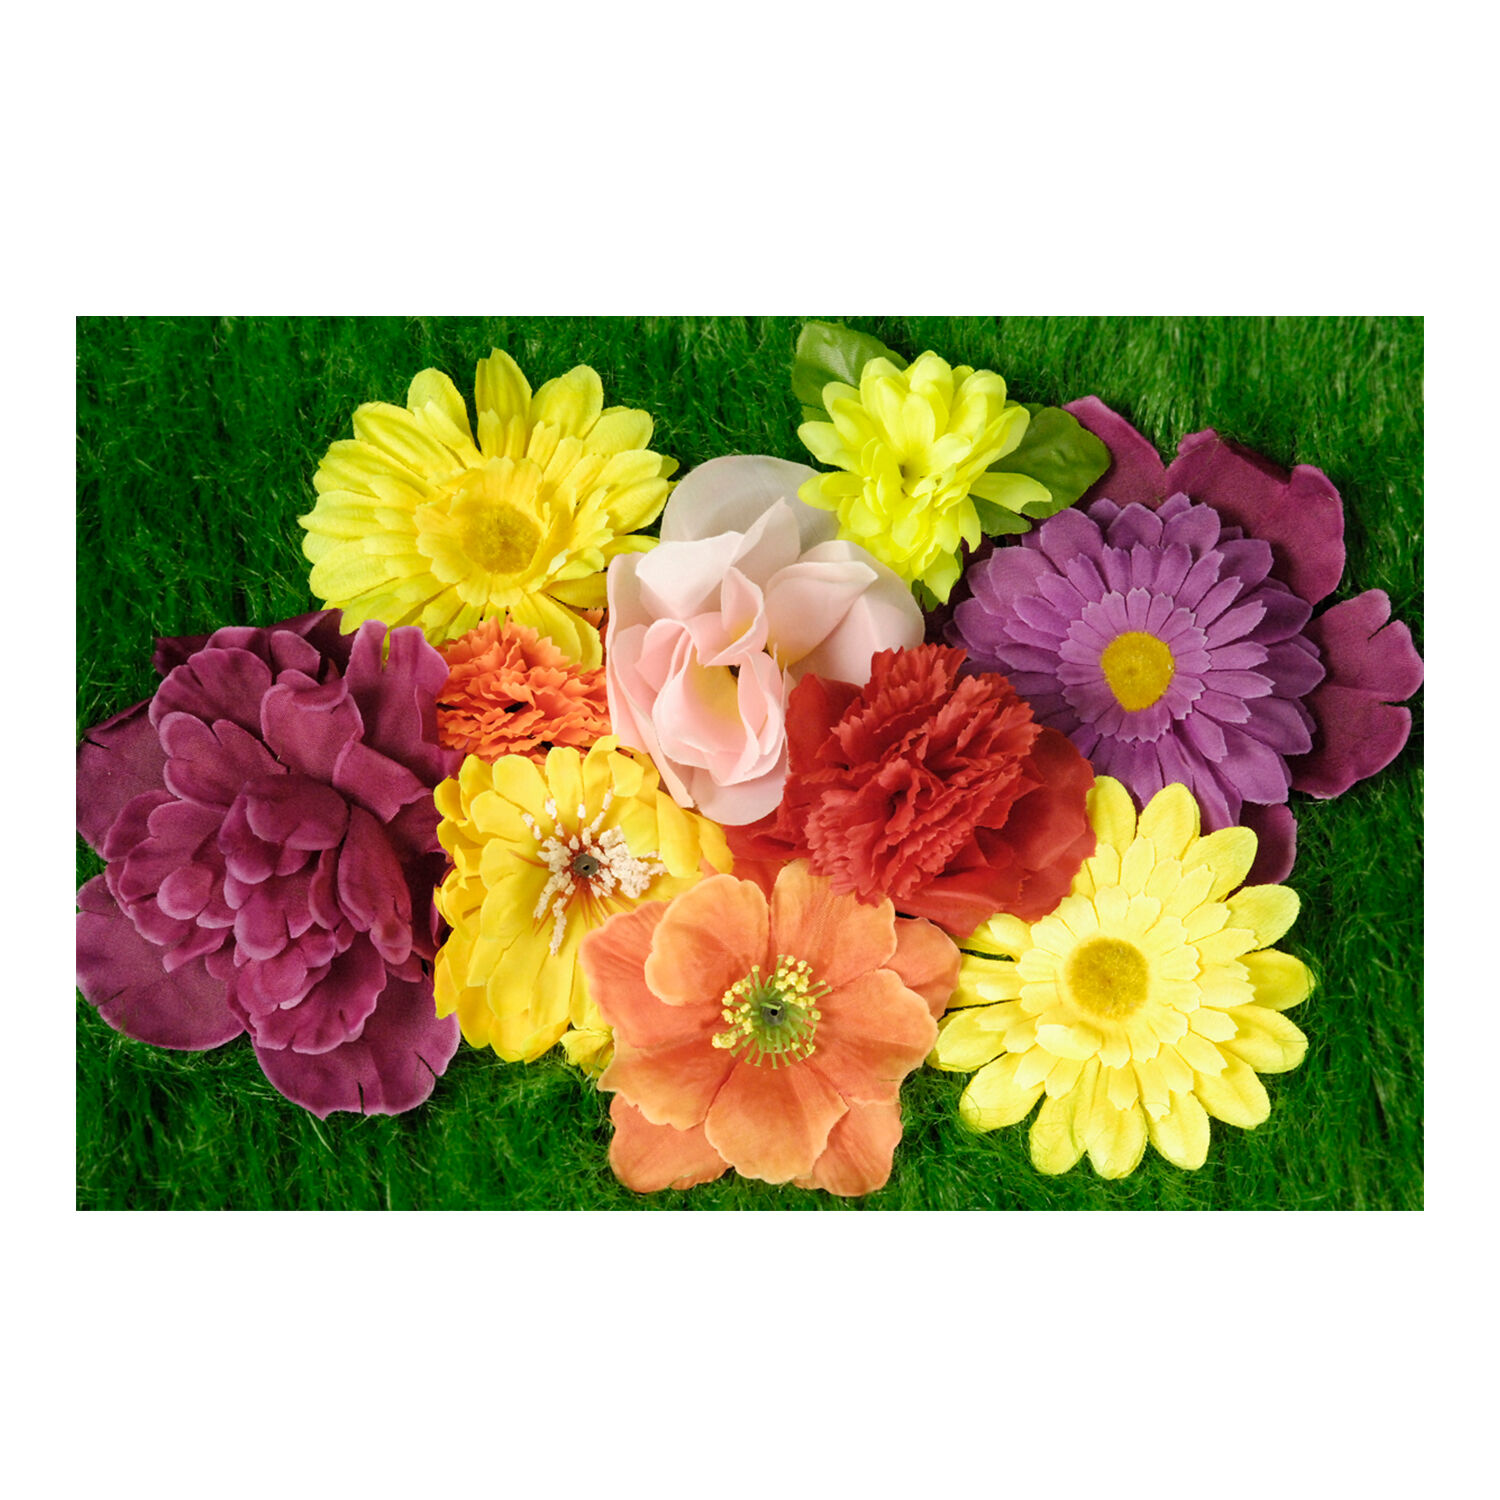 NEU Blten-Sortiment Blumen-Mix, sortierte Farben, 10 Stck